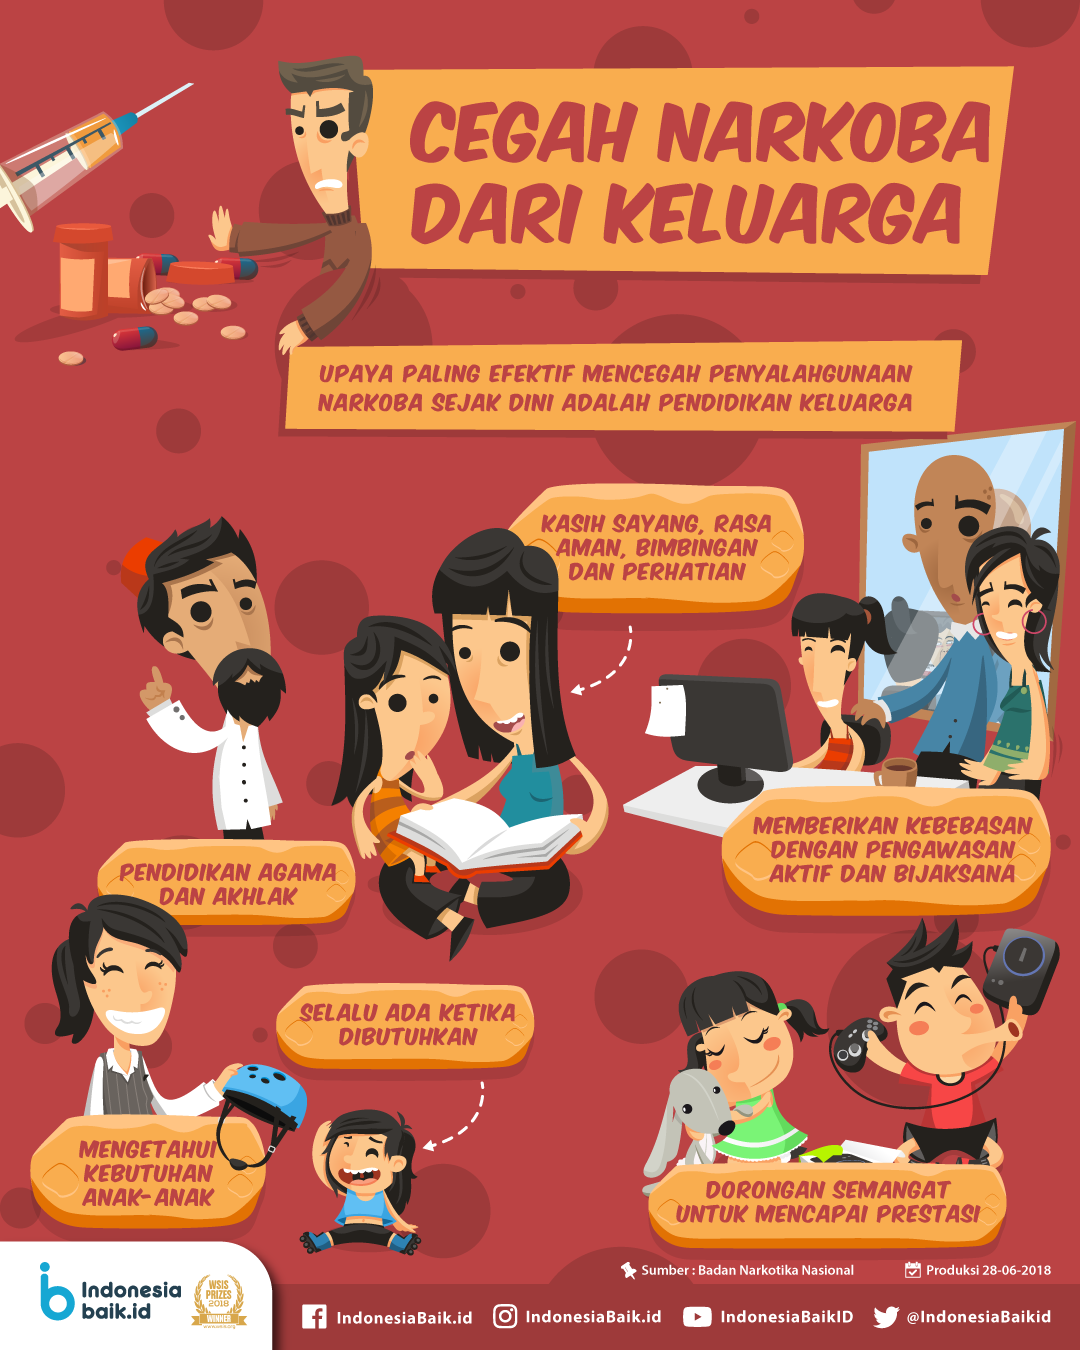 Cegah Narkoba dari Keluarga!  Indonesia Baik